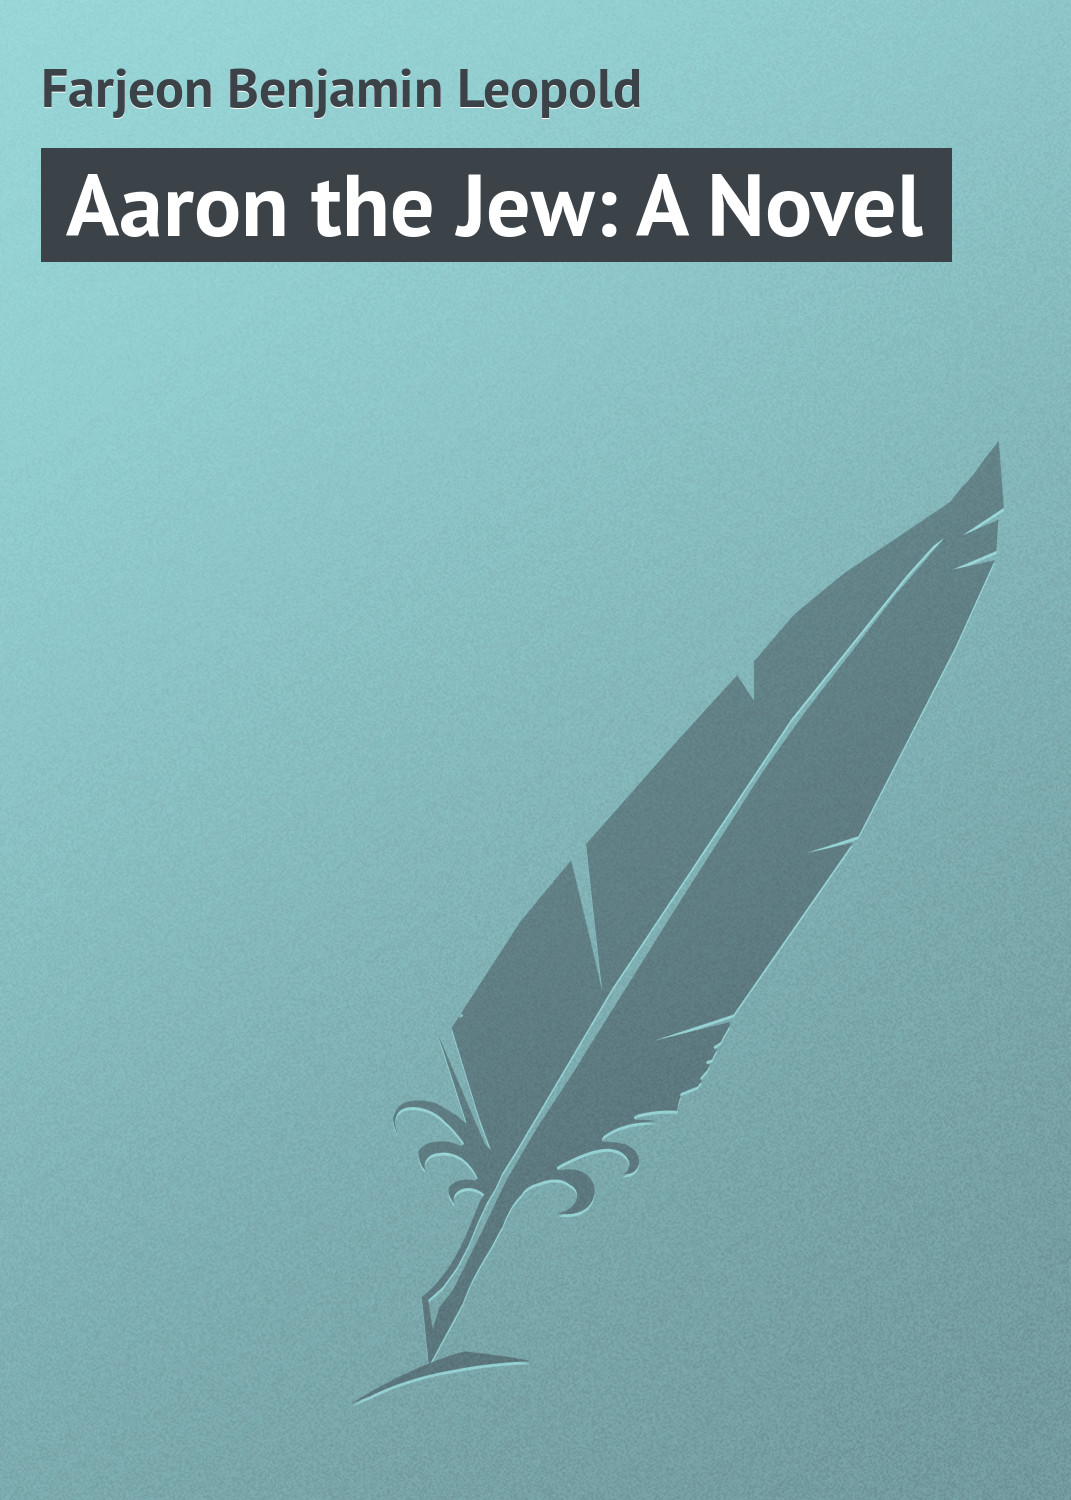 Книга Aaron the Jew: A Novel из серии , созданная Benjamin Farjeon, может относится к жанру Зарубежная классика. Стоимость электронной книги Aaron the Jew: A Novel с идентификатором 23147683 составляет 5.99 руб.